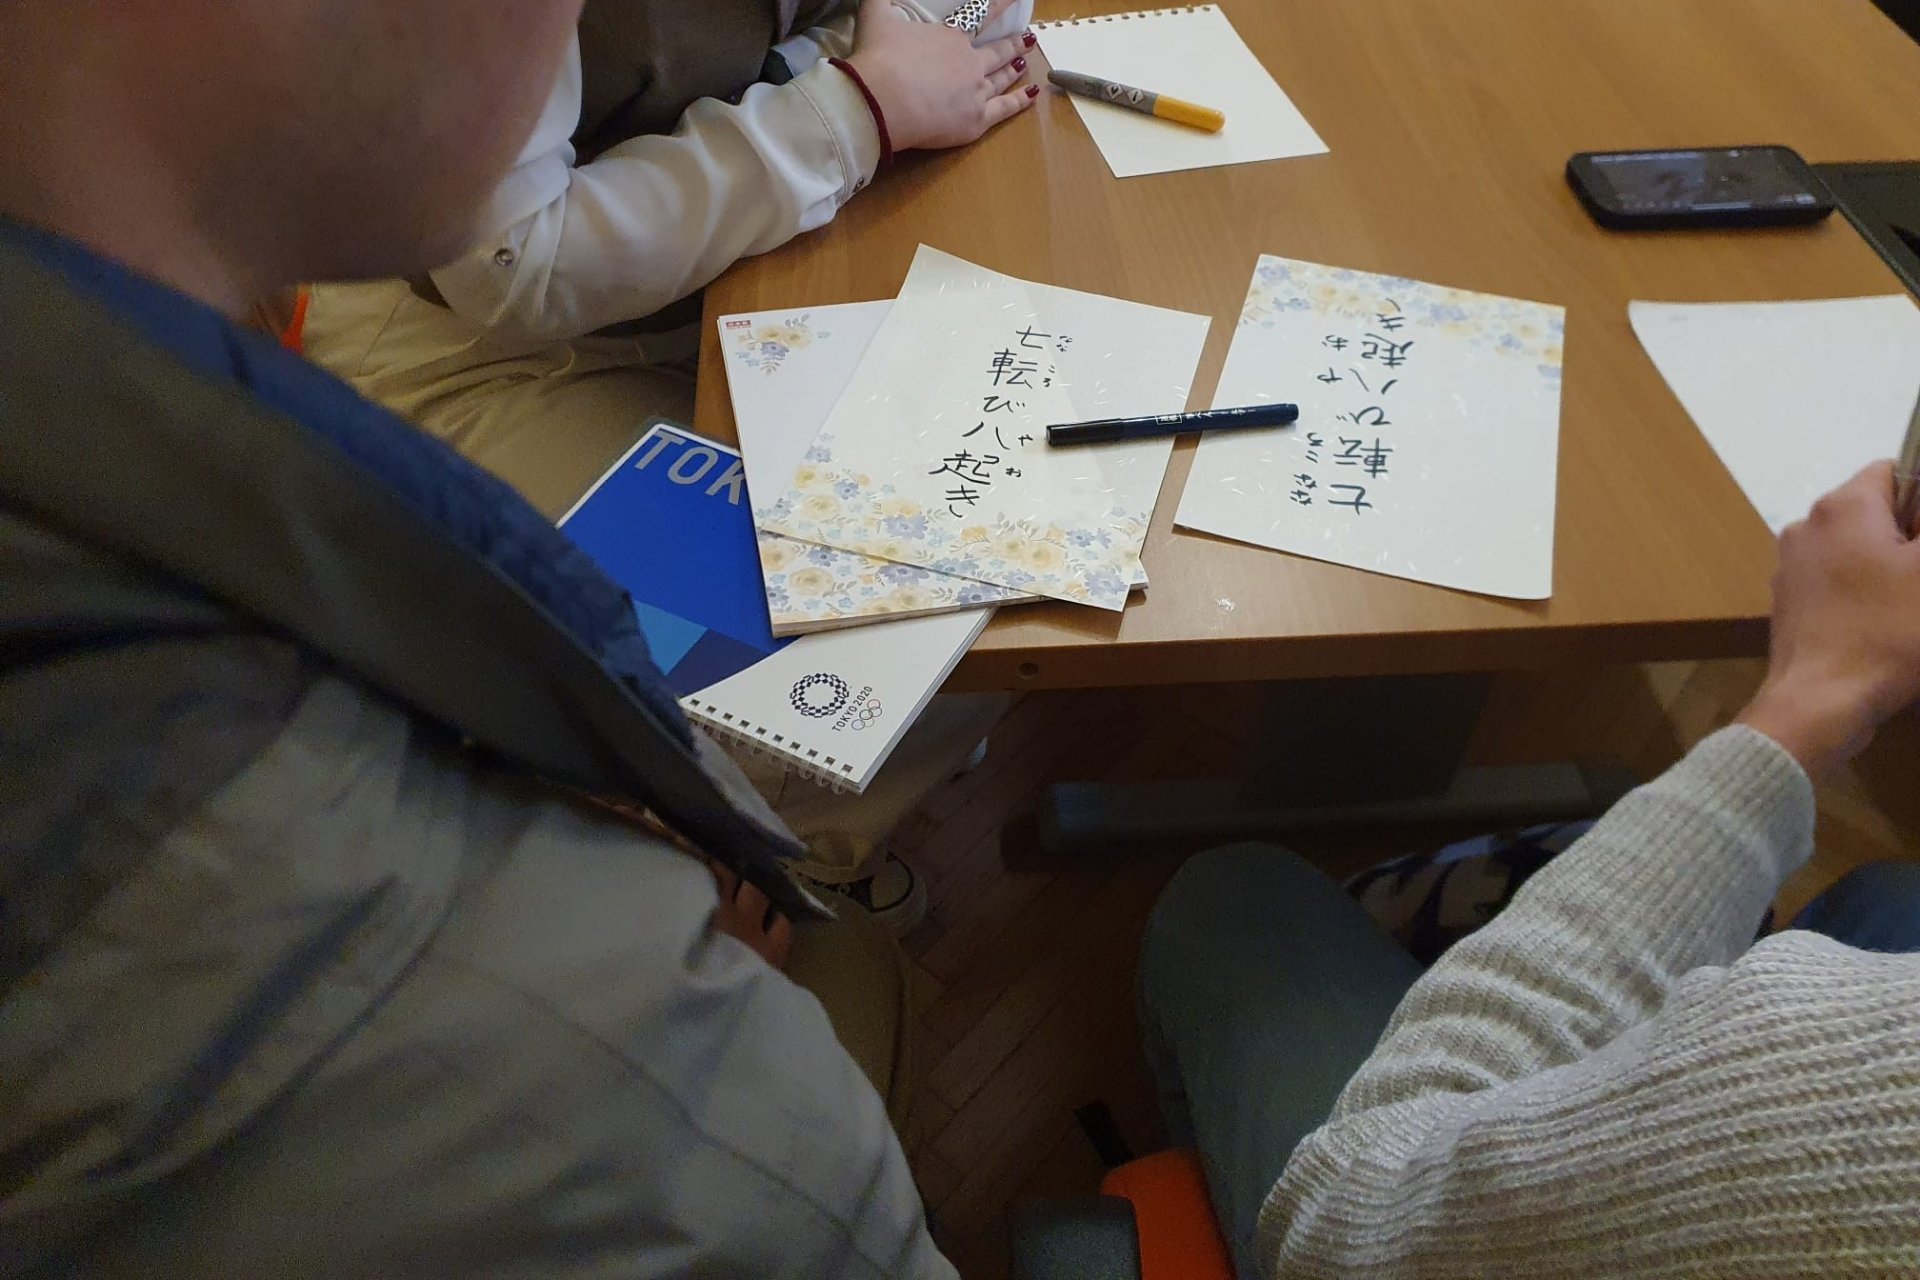 Îți dorești să înveți limba japozeză? Pe 18 mai, participă la un curs gratuit și dezvoltă-ți abilitățile lingvistice